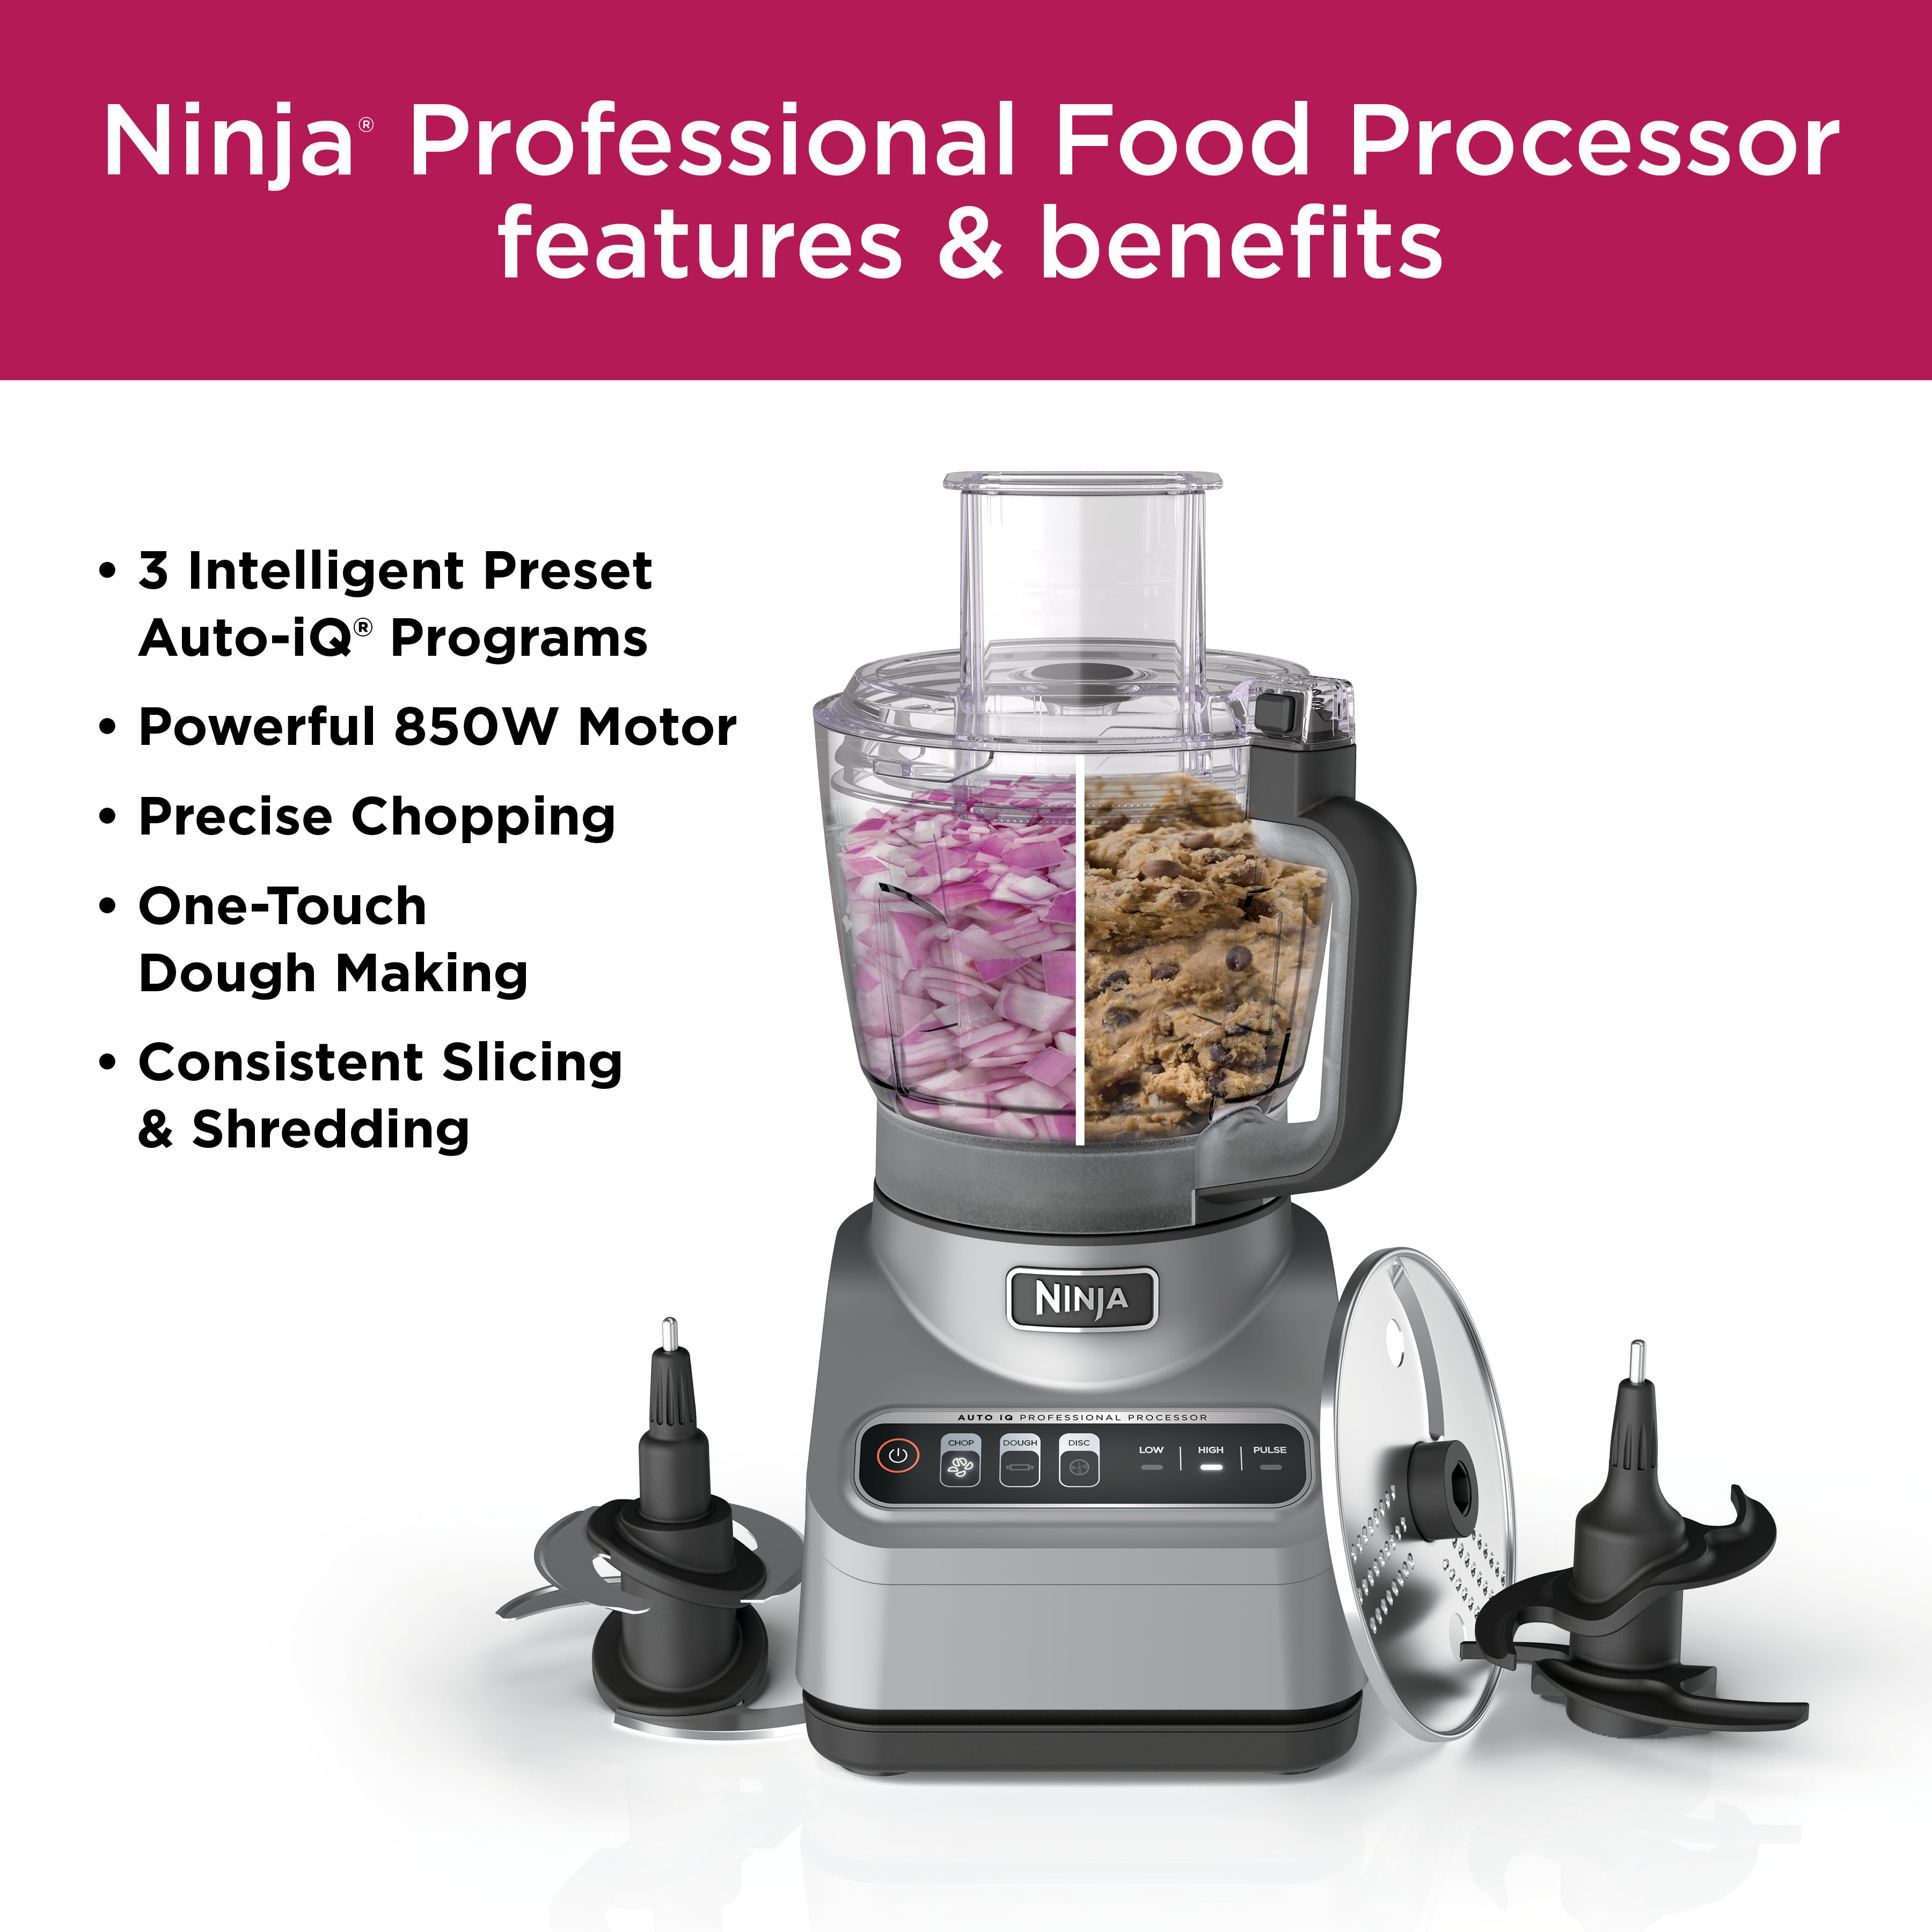 Ninja Pro Food Processor, 850W, 9-Cup, Auto-iQ